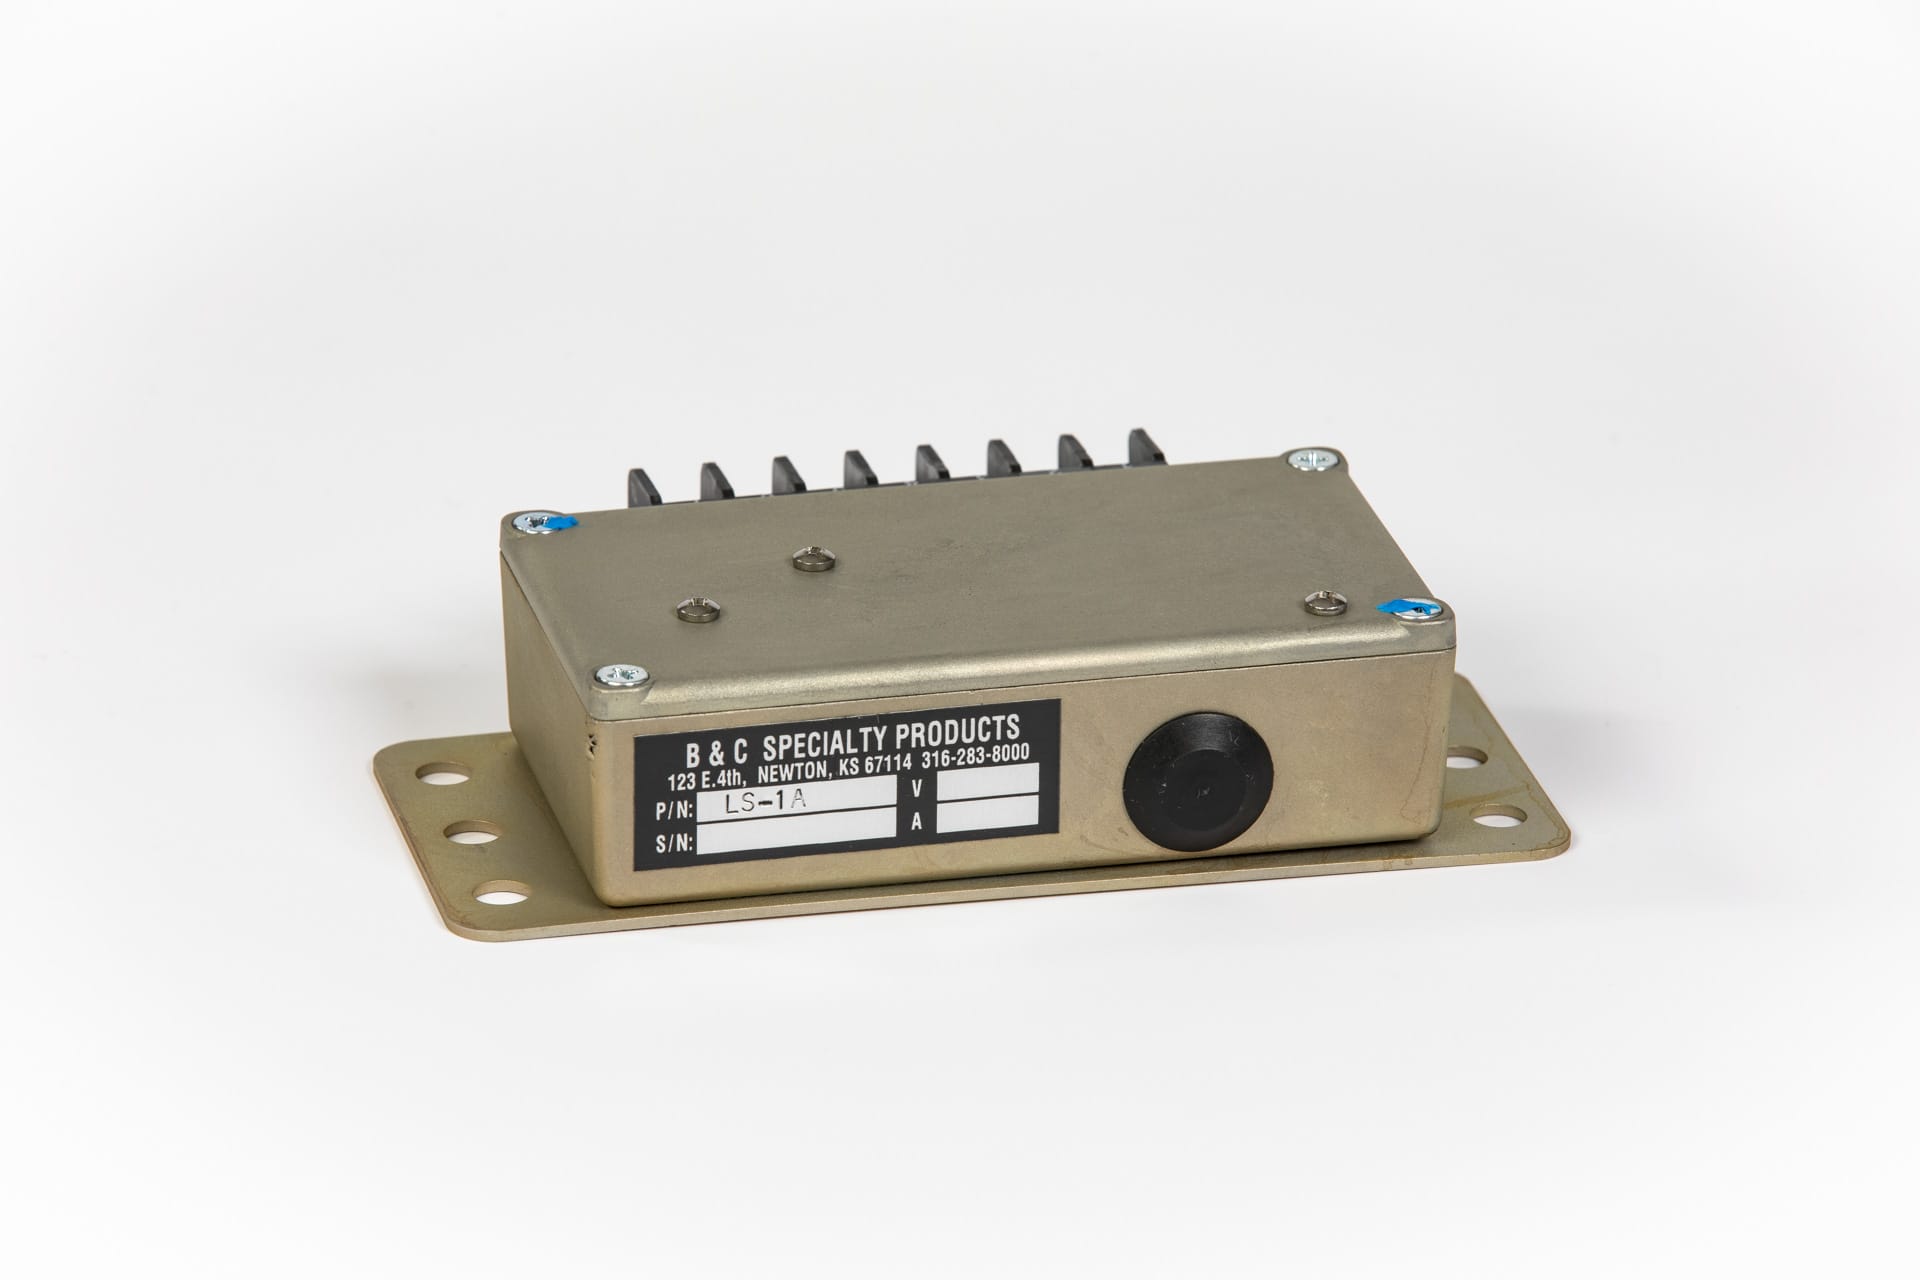 LS1B Alternator Controller/Regulator, 28v (Homebuilt) (B-Stock S/N: 2M30F5N02)